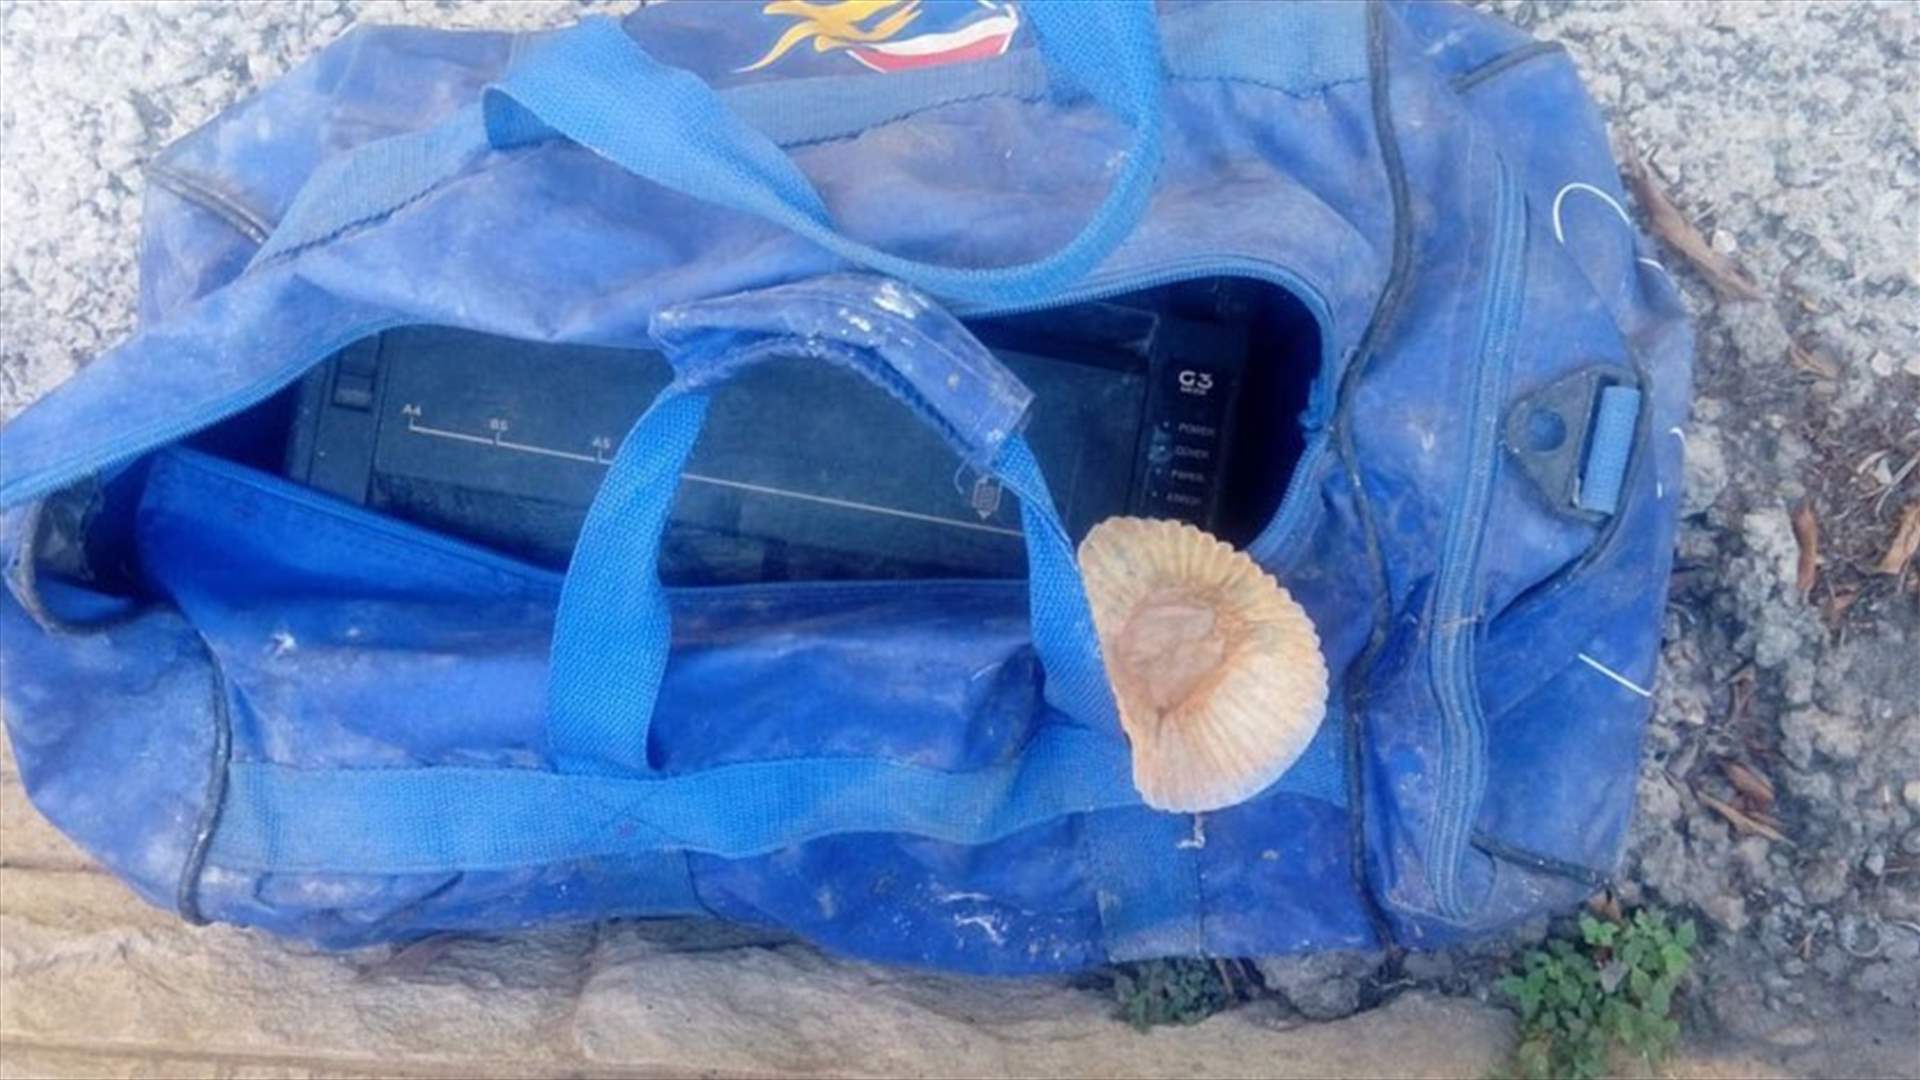 [PHOTO] Suspicious bag found in Adonis